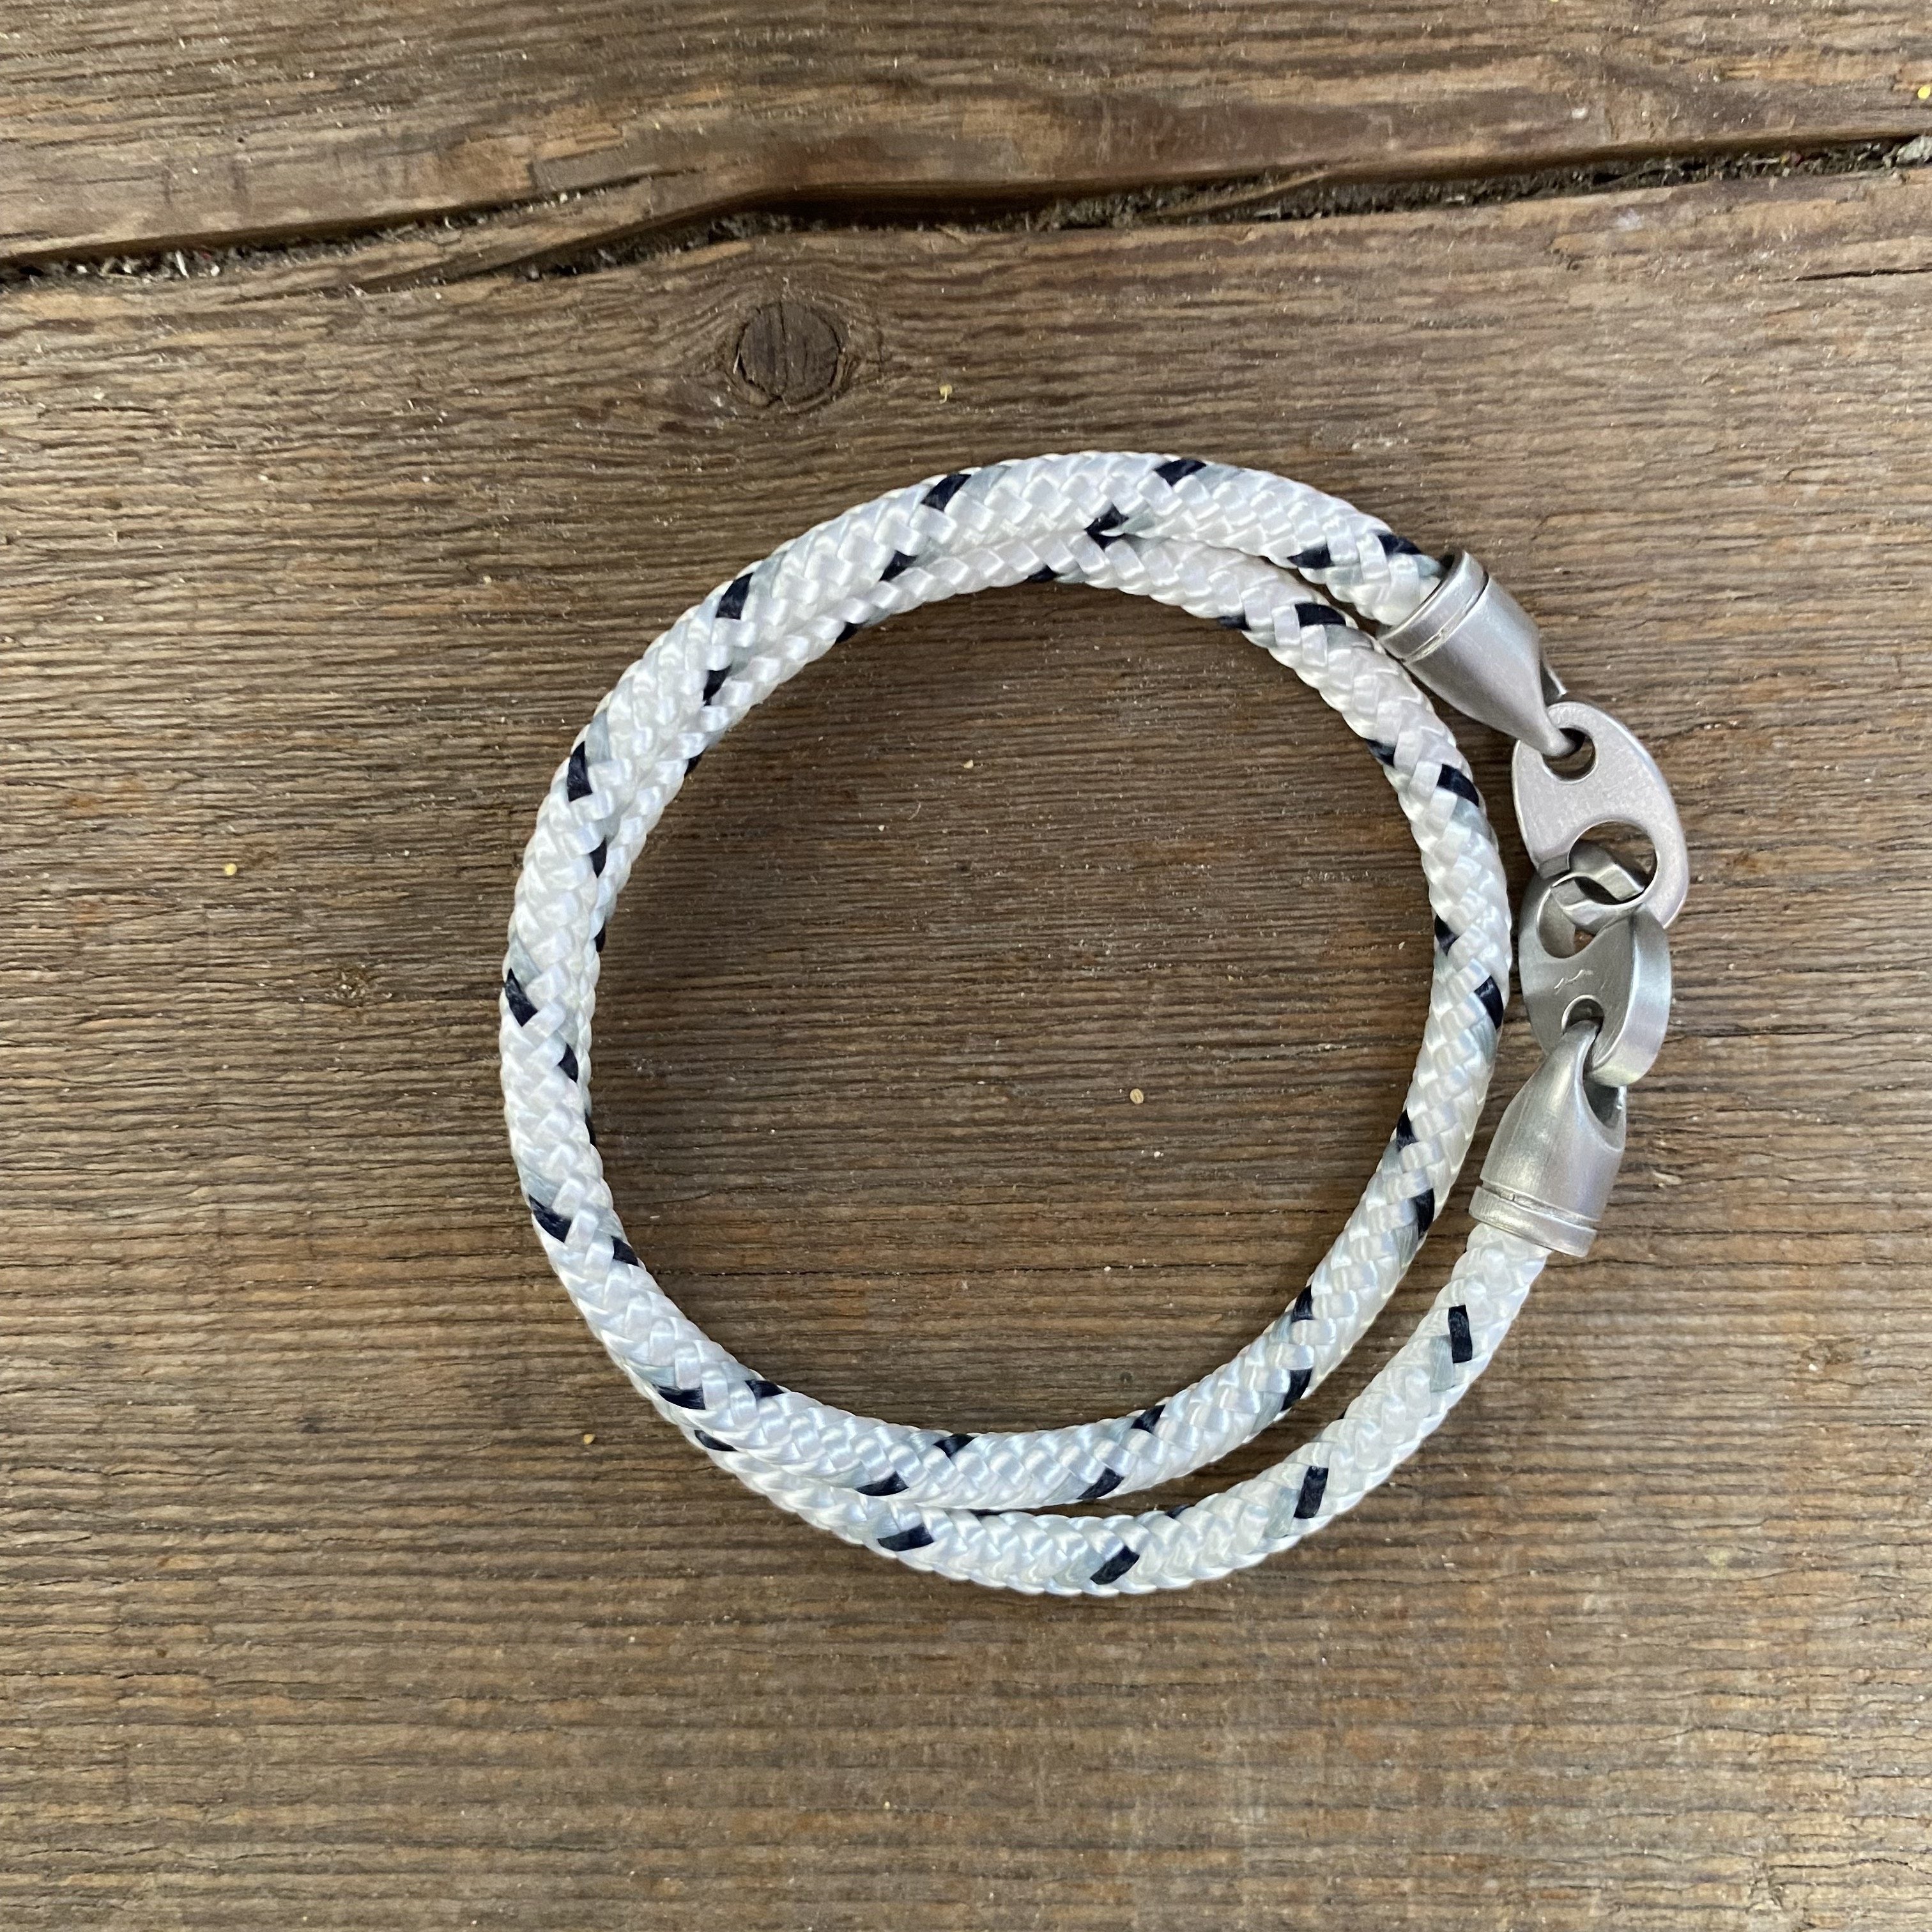  Nautical Rope Bracelet